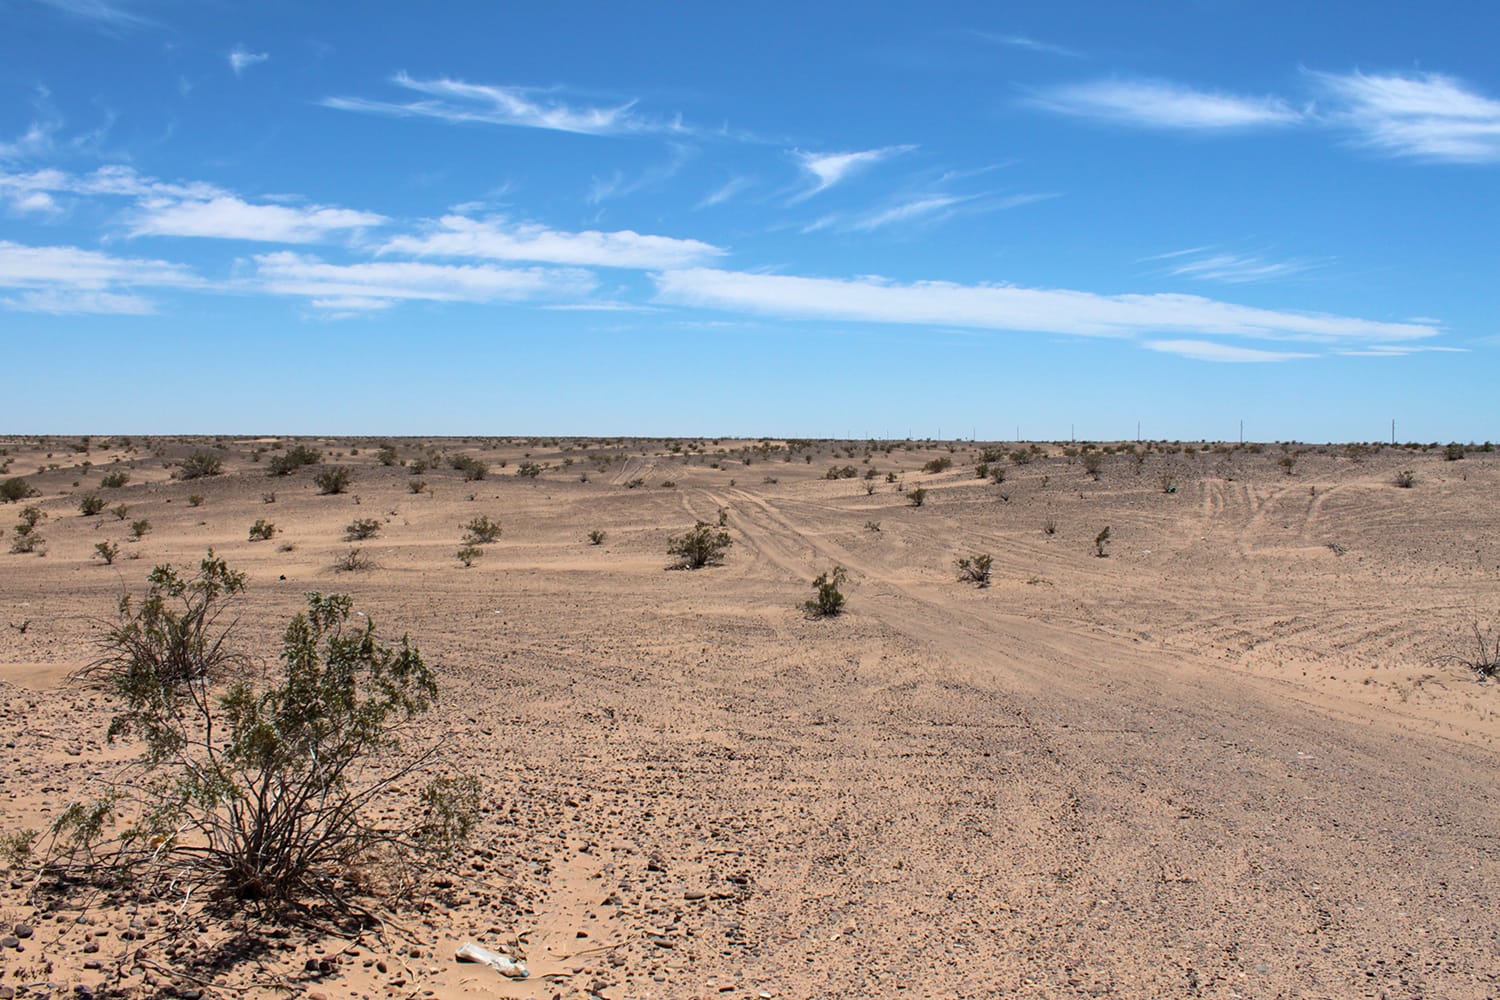 The Sonoran Desert landscape around a rescue beacon in Yuma Sector Arizona